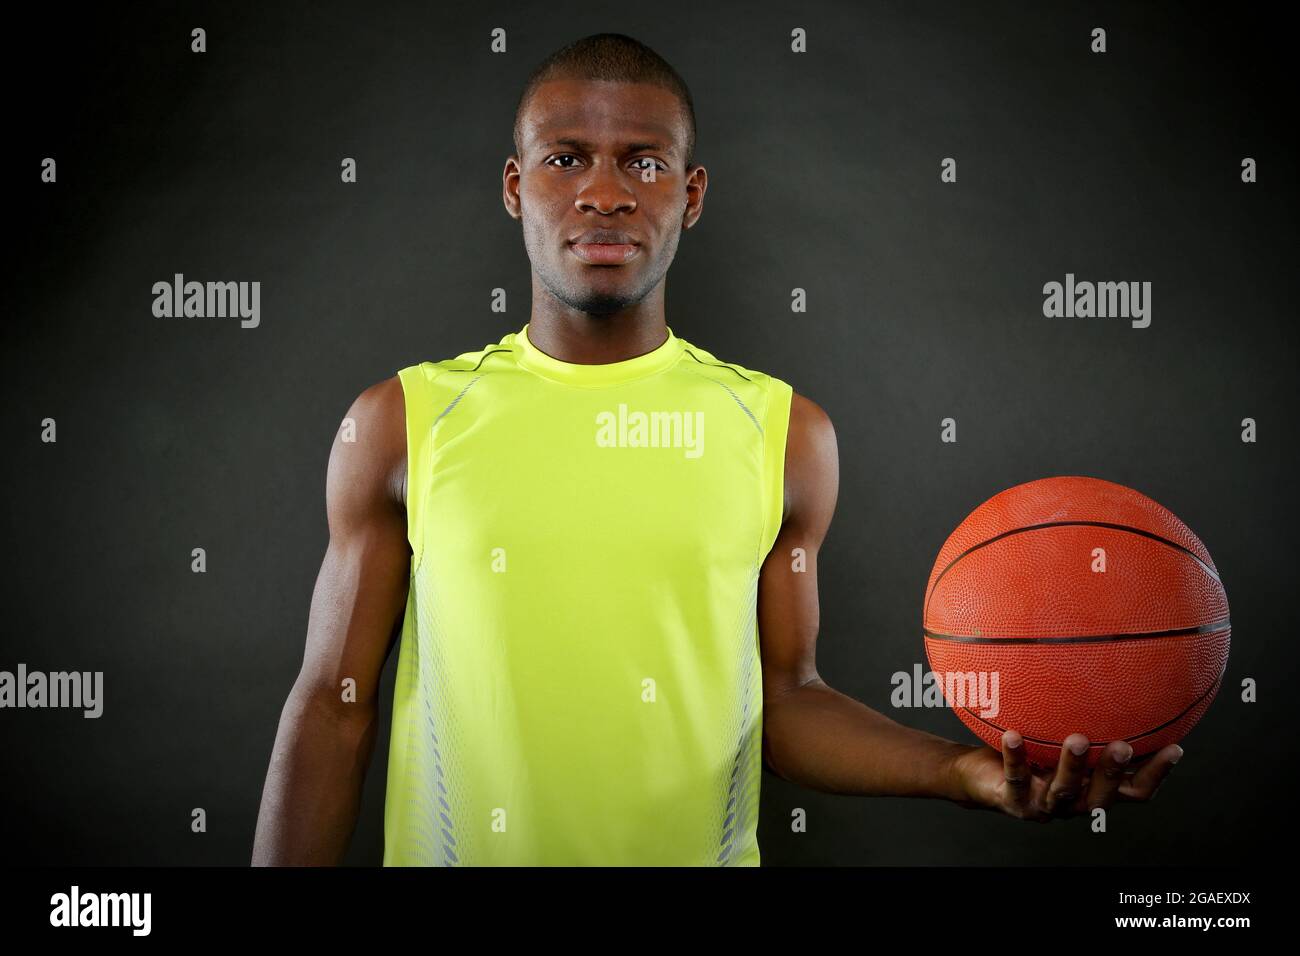 Joueur de basket-ball américain africain tenant le ballon sur fond sombre Banque D'Images